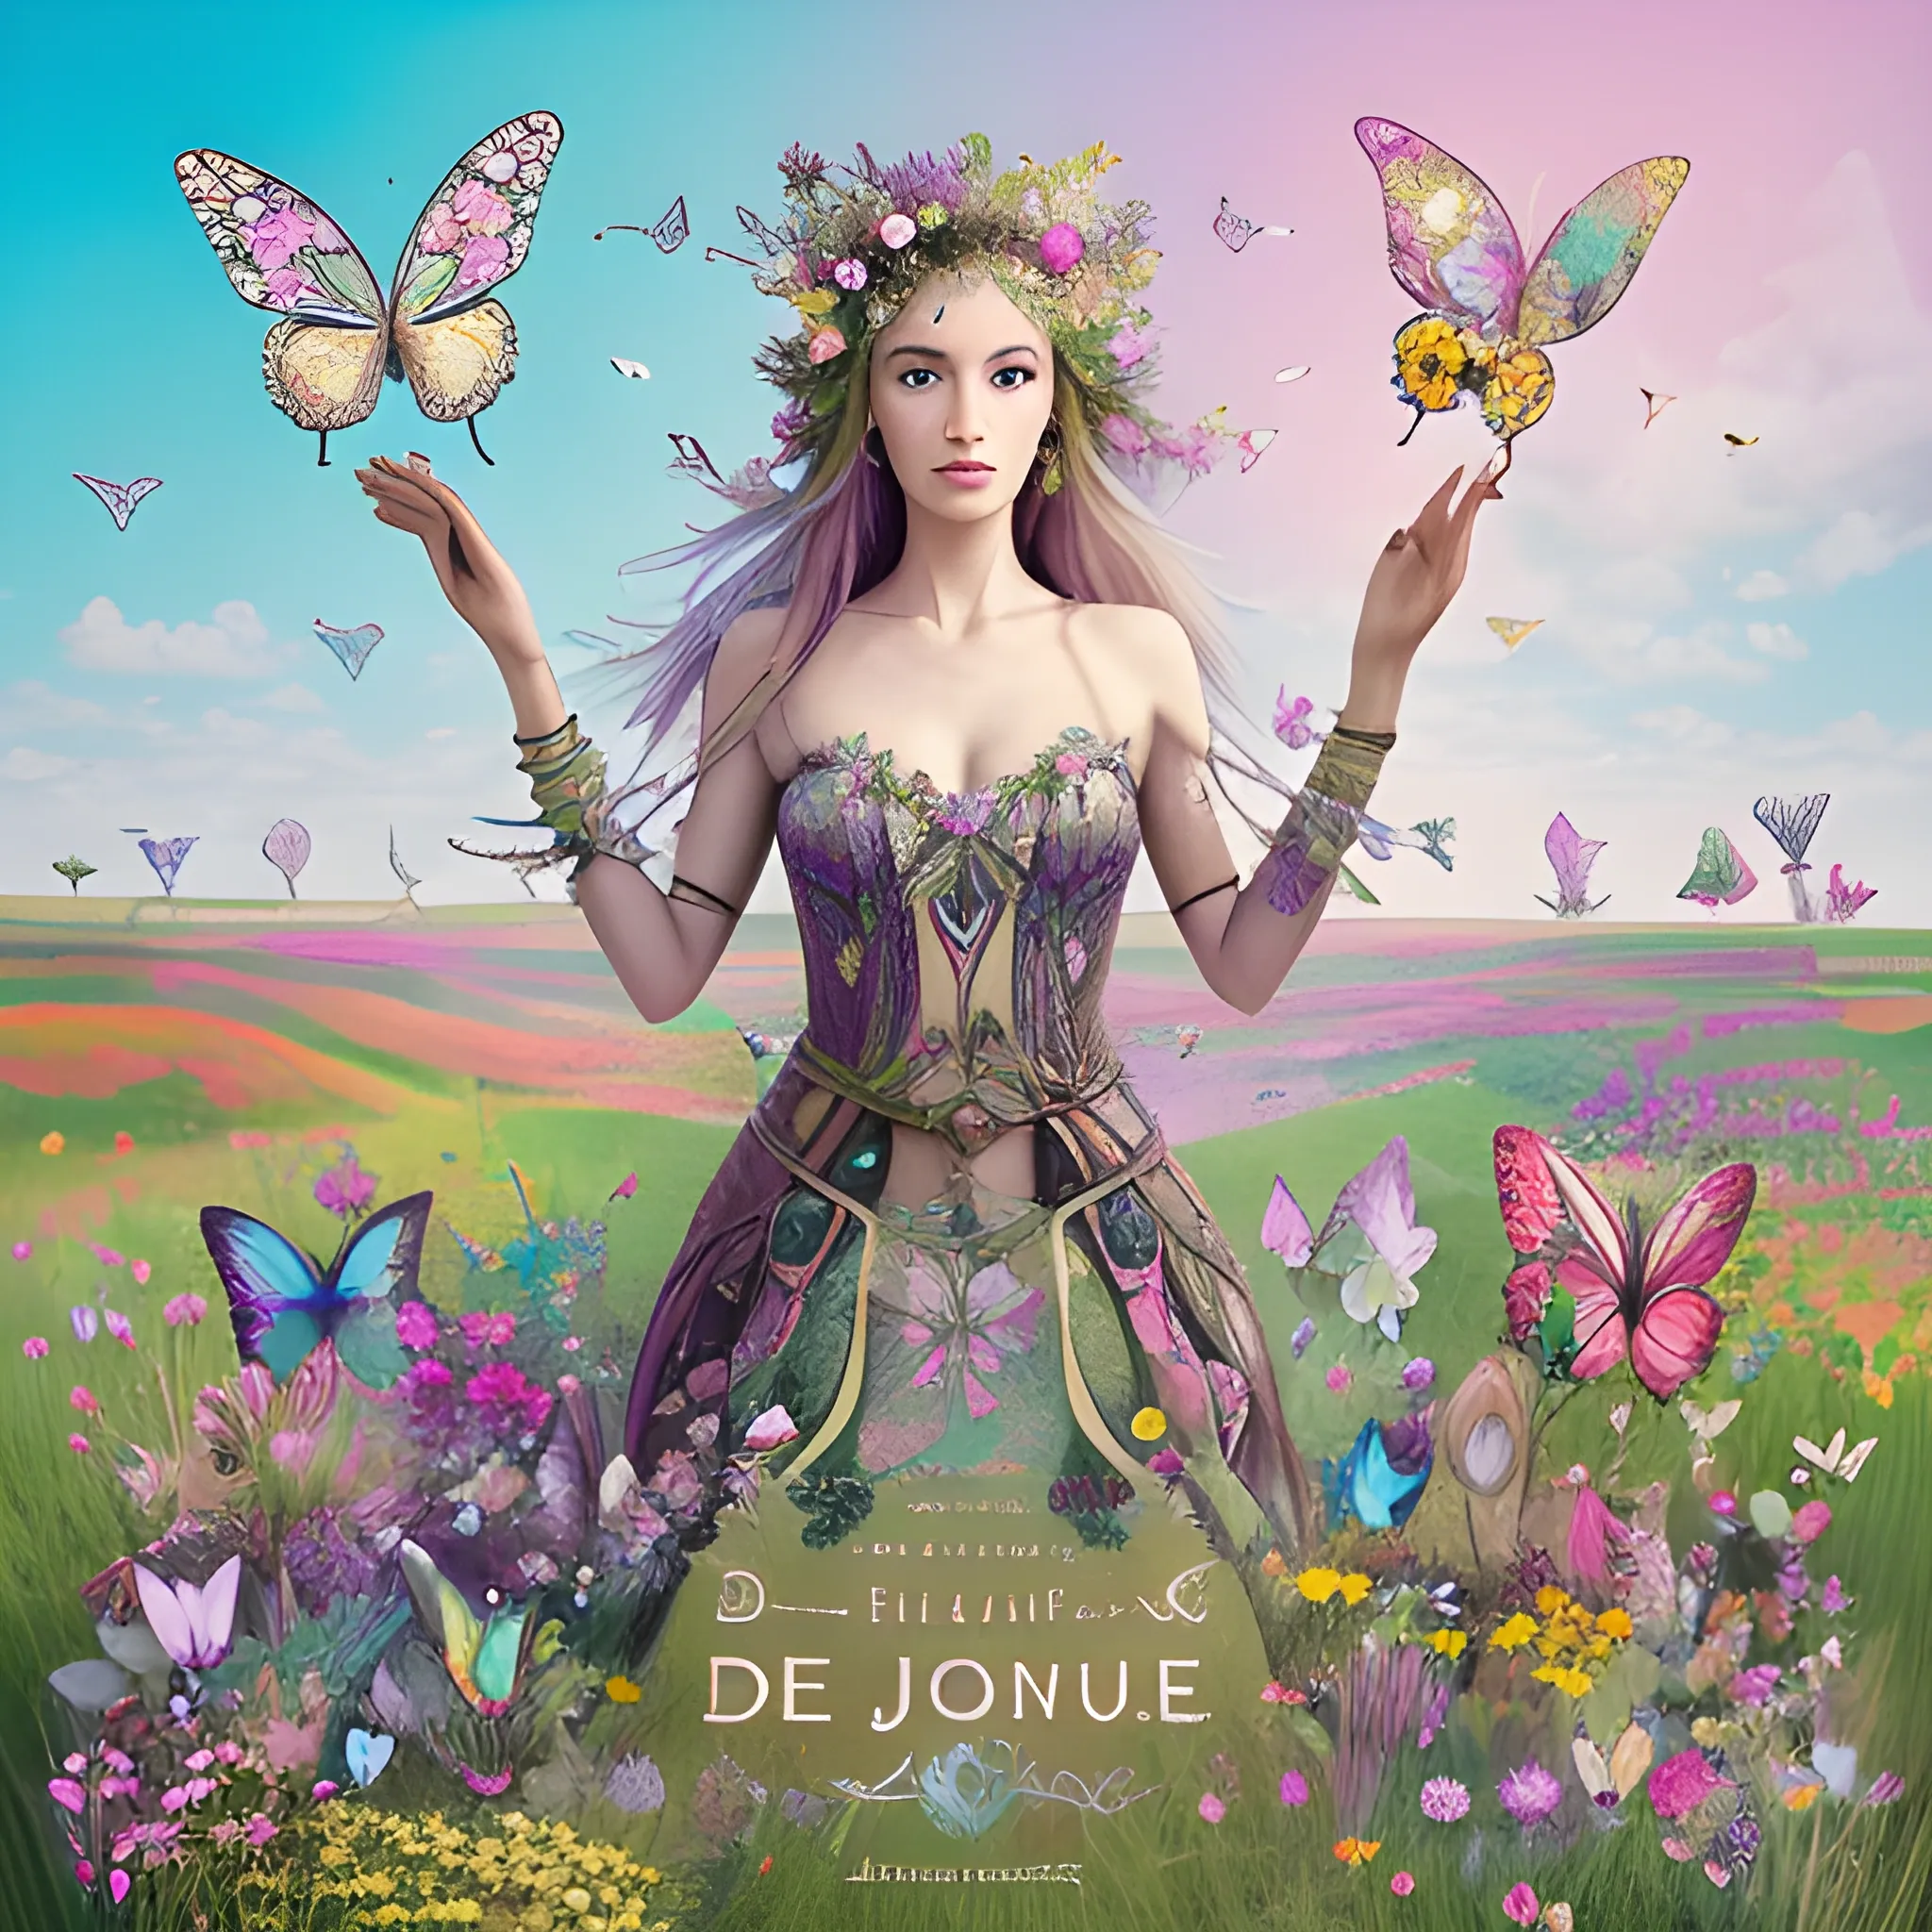 jolie femme elfique debout avec un arc des bijoux divers et excentrique dans une prairie fleurie et des papillons multicolores qui volent autour de la jolie femme debout dans la prairie fleurie de beaucoup de fleurs exotiques colorées, Trippy